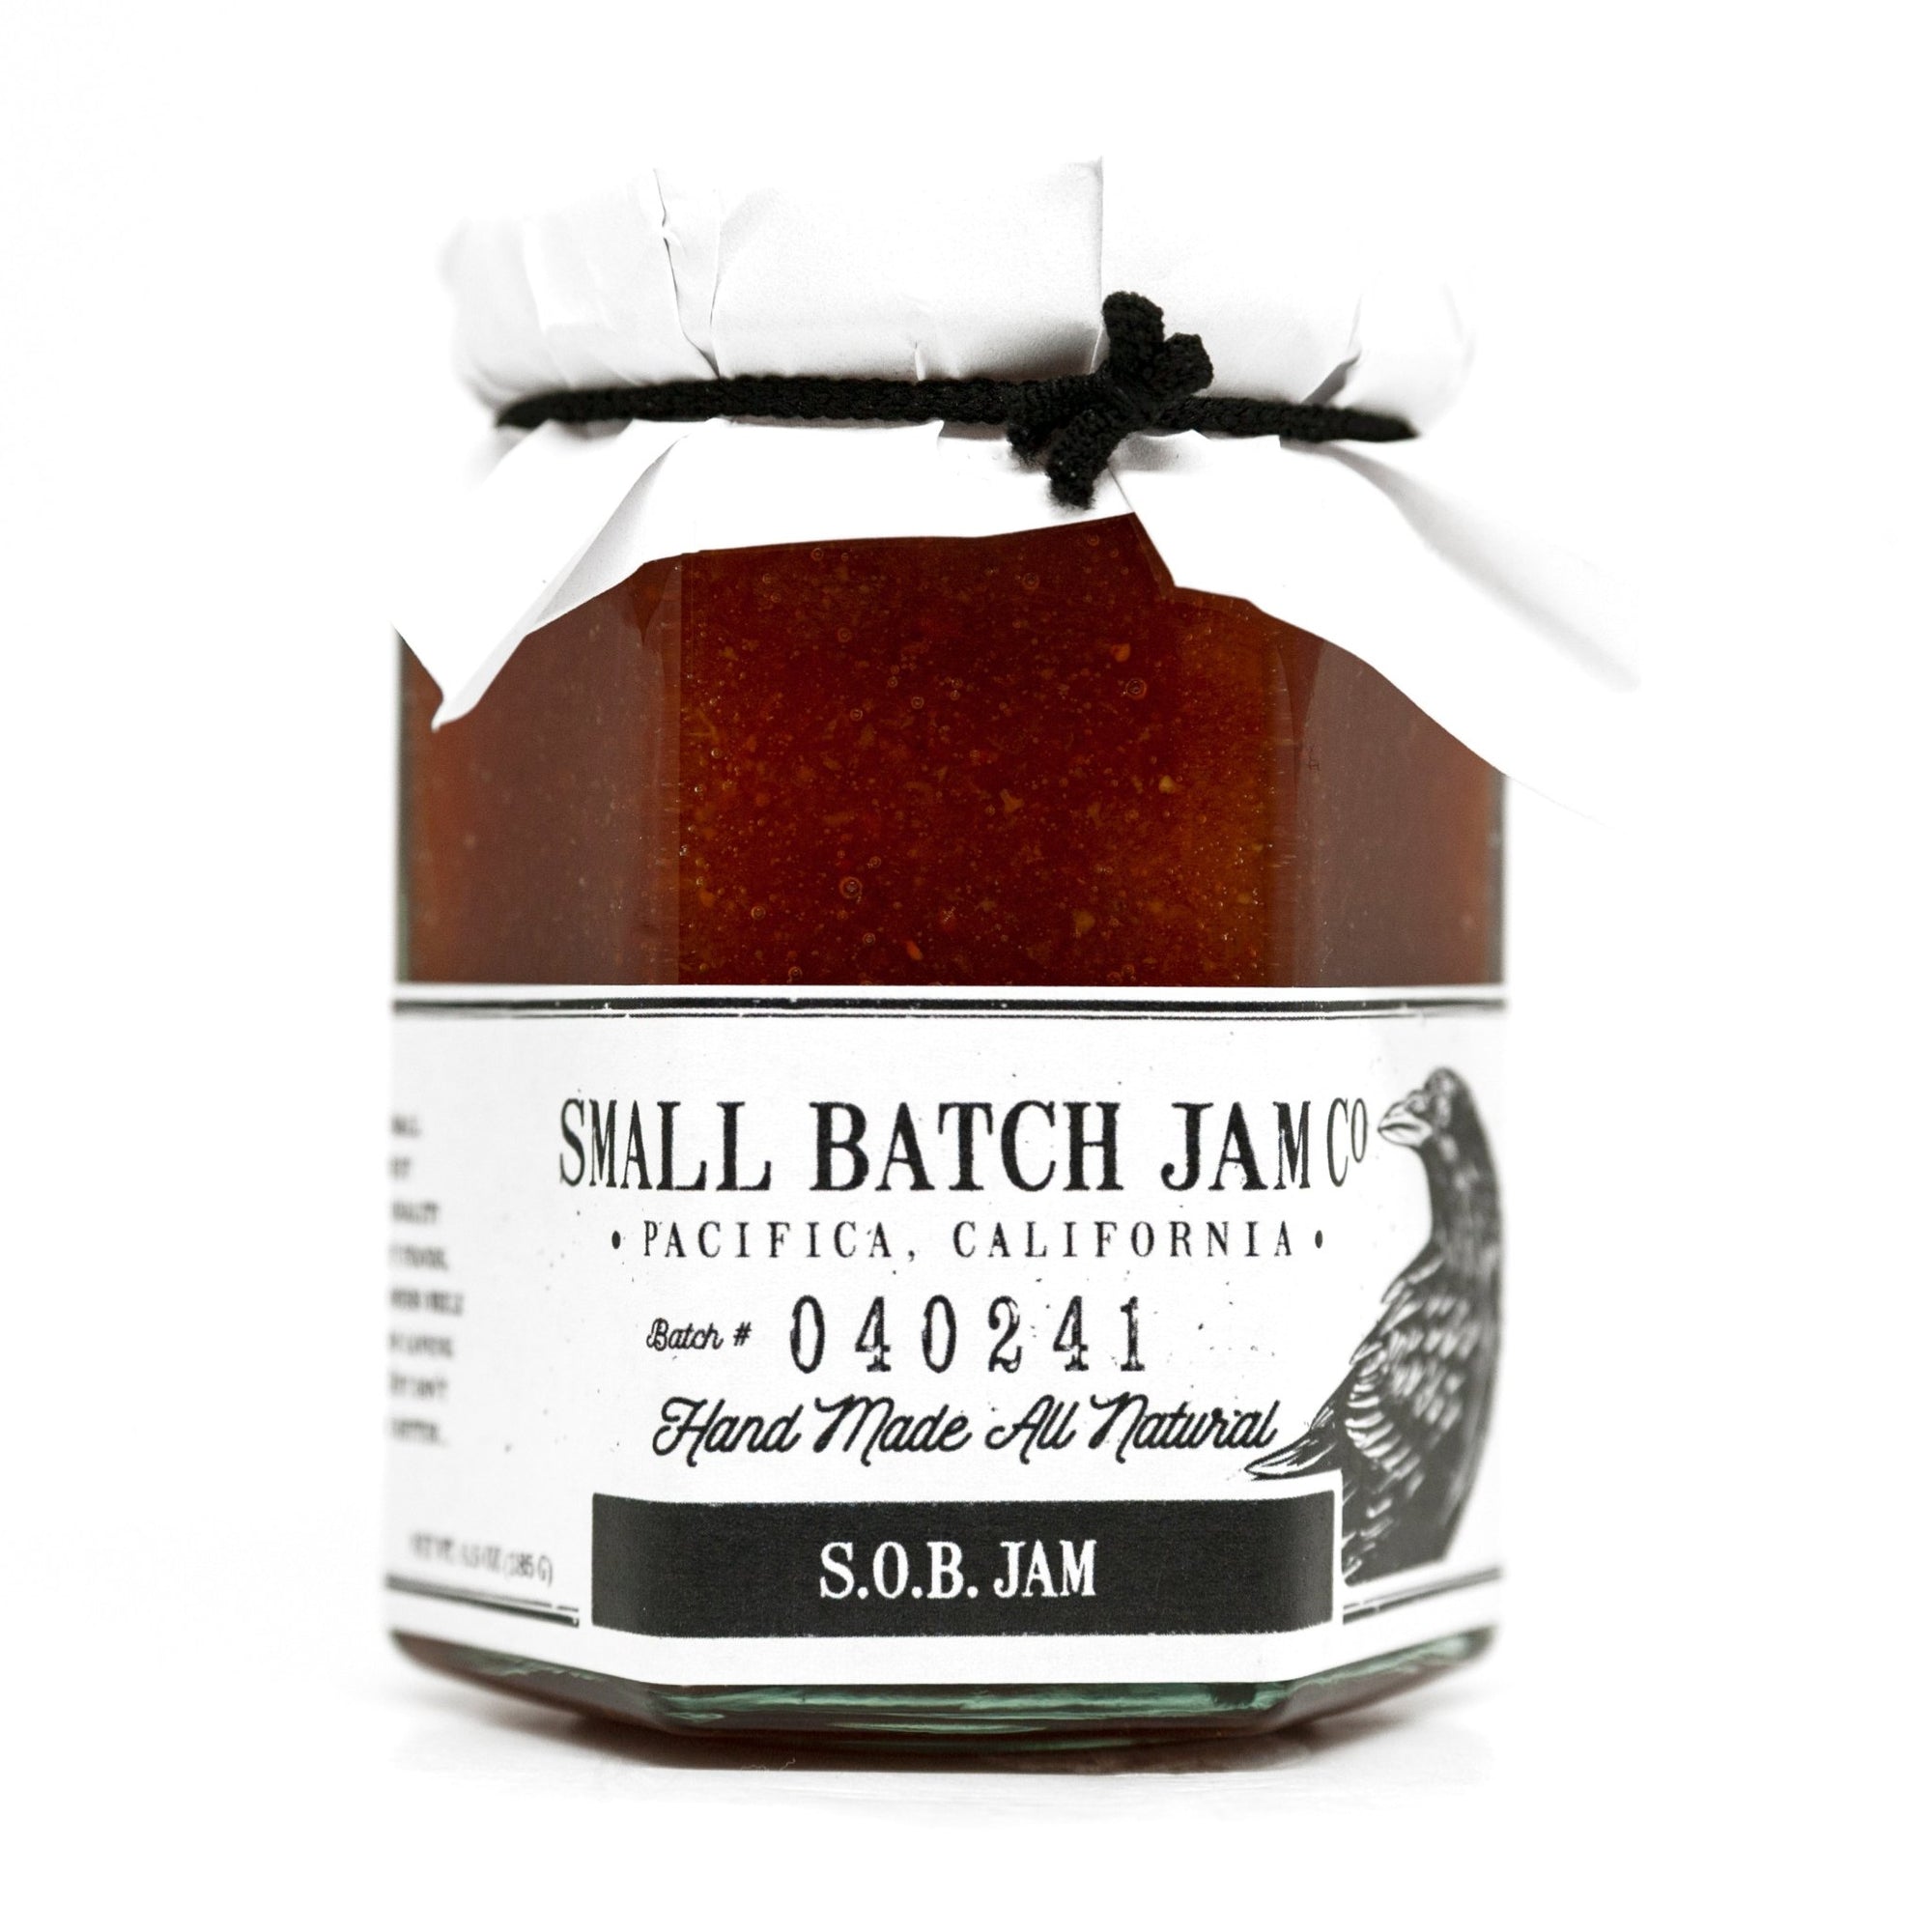 S.O.B. Jam - Small Batch Jam Co